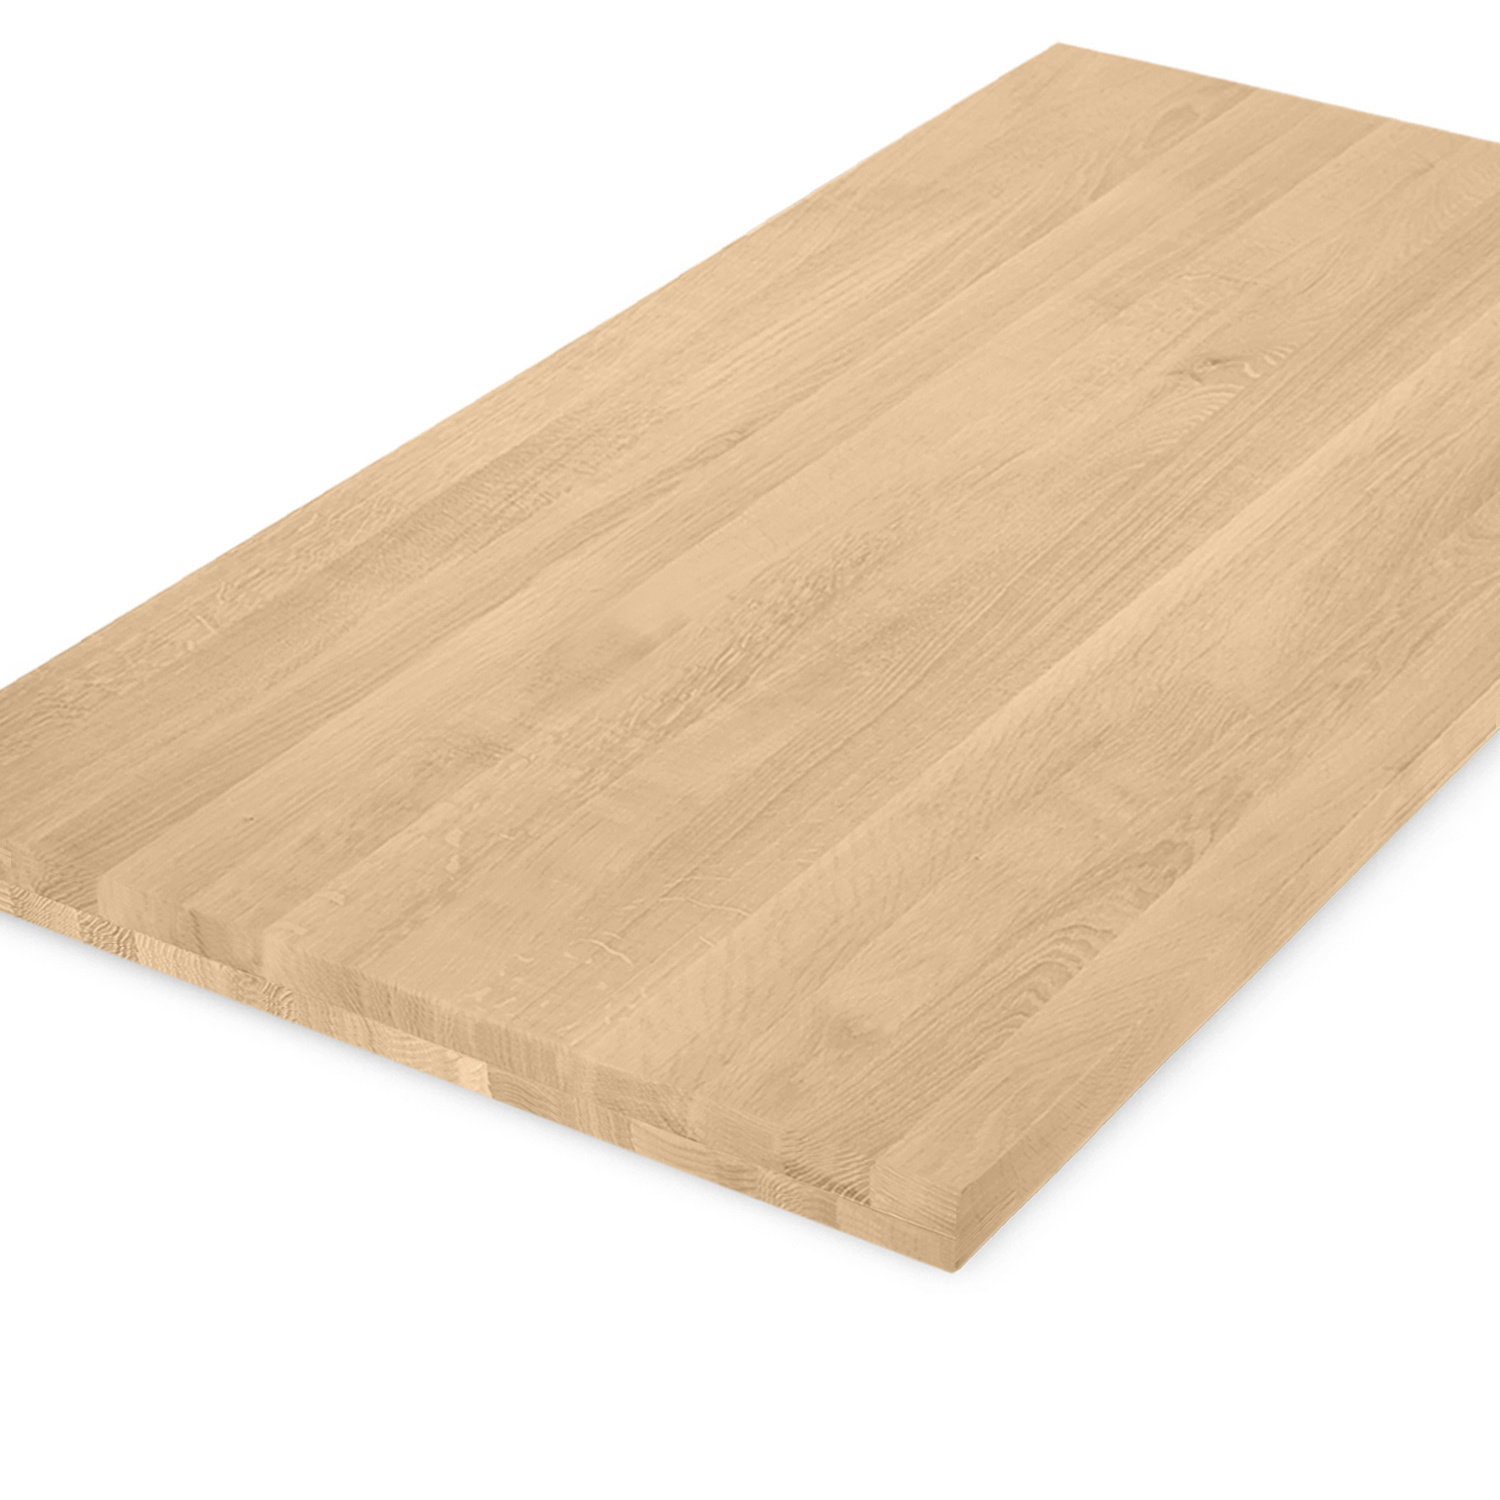  Tischplatte Eiche nach Maß - 4,6 cm dick (2-lagig) - Eichenholz A-Qualität - Eiche Tischplatte massiv - verleimt & künstlich getrocknet (HF 8-12%) - 50-120x50-300 cm